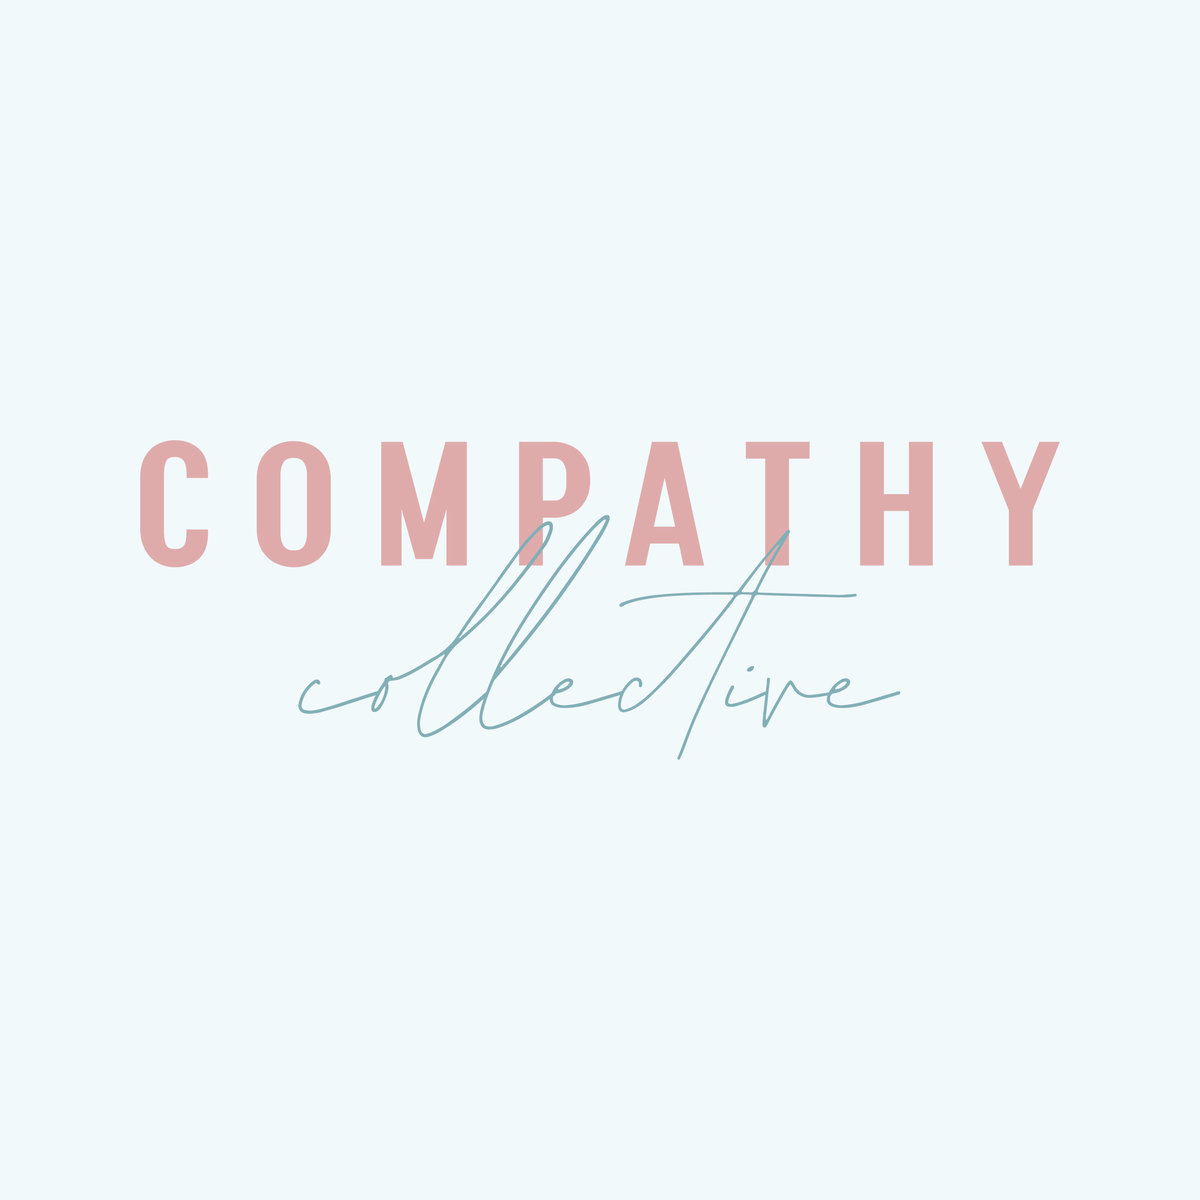 Compathy Collective Social Logo